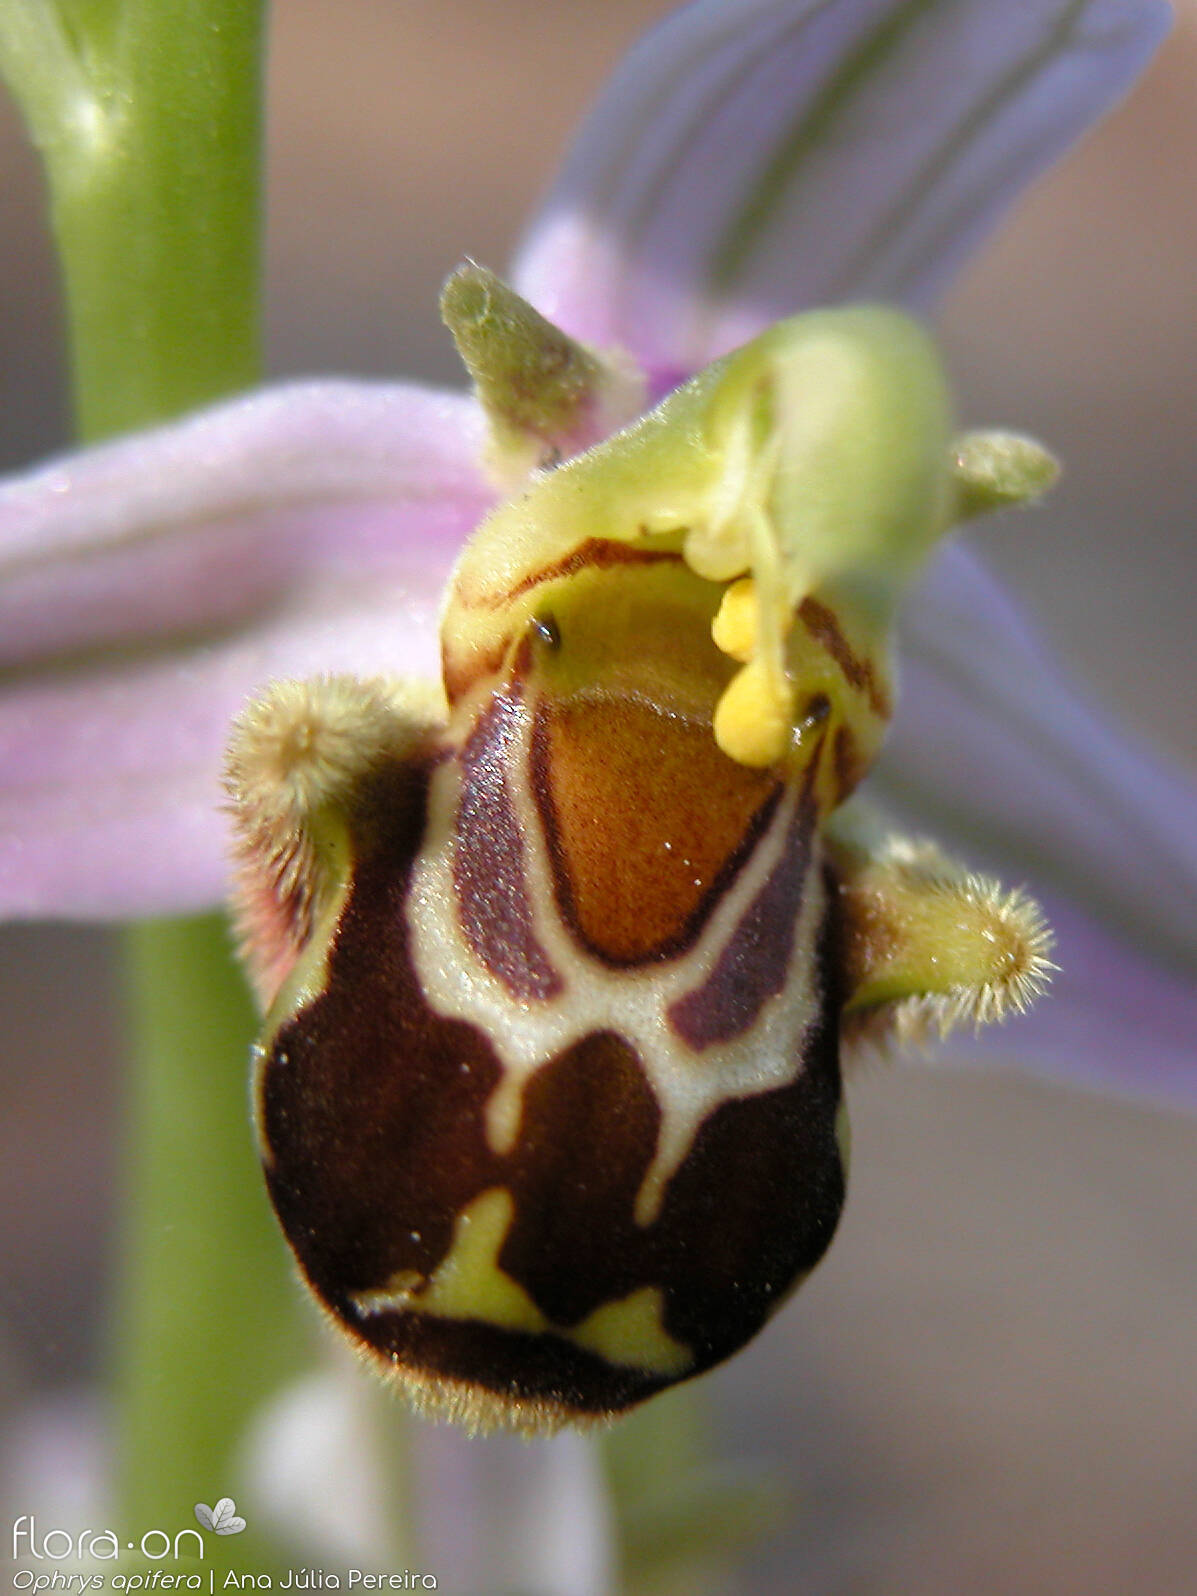 Ophrys apifera - Flor (close-up) | Ana Júlia Pereira; CC BY-NC 4.0